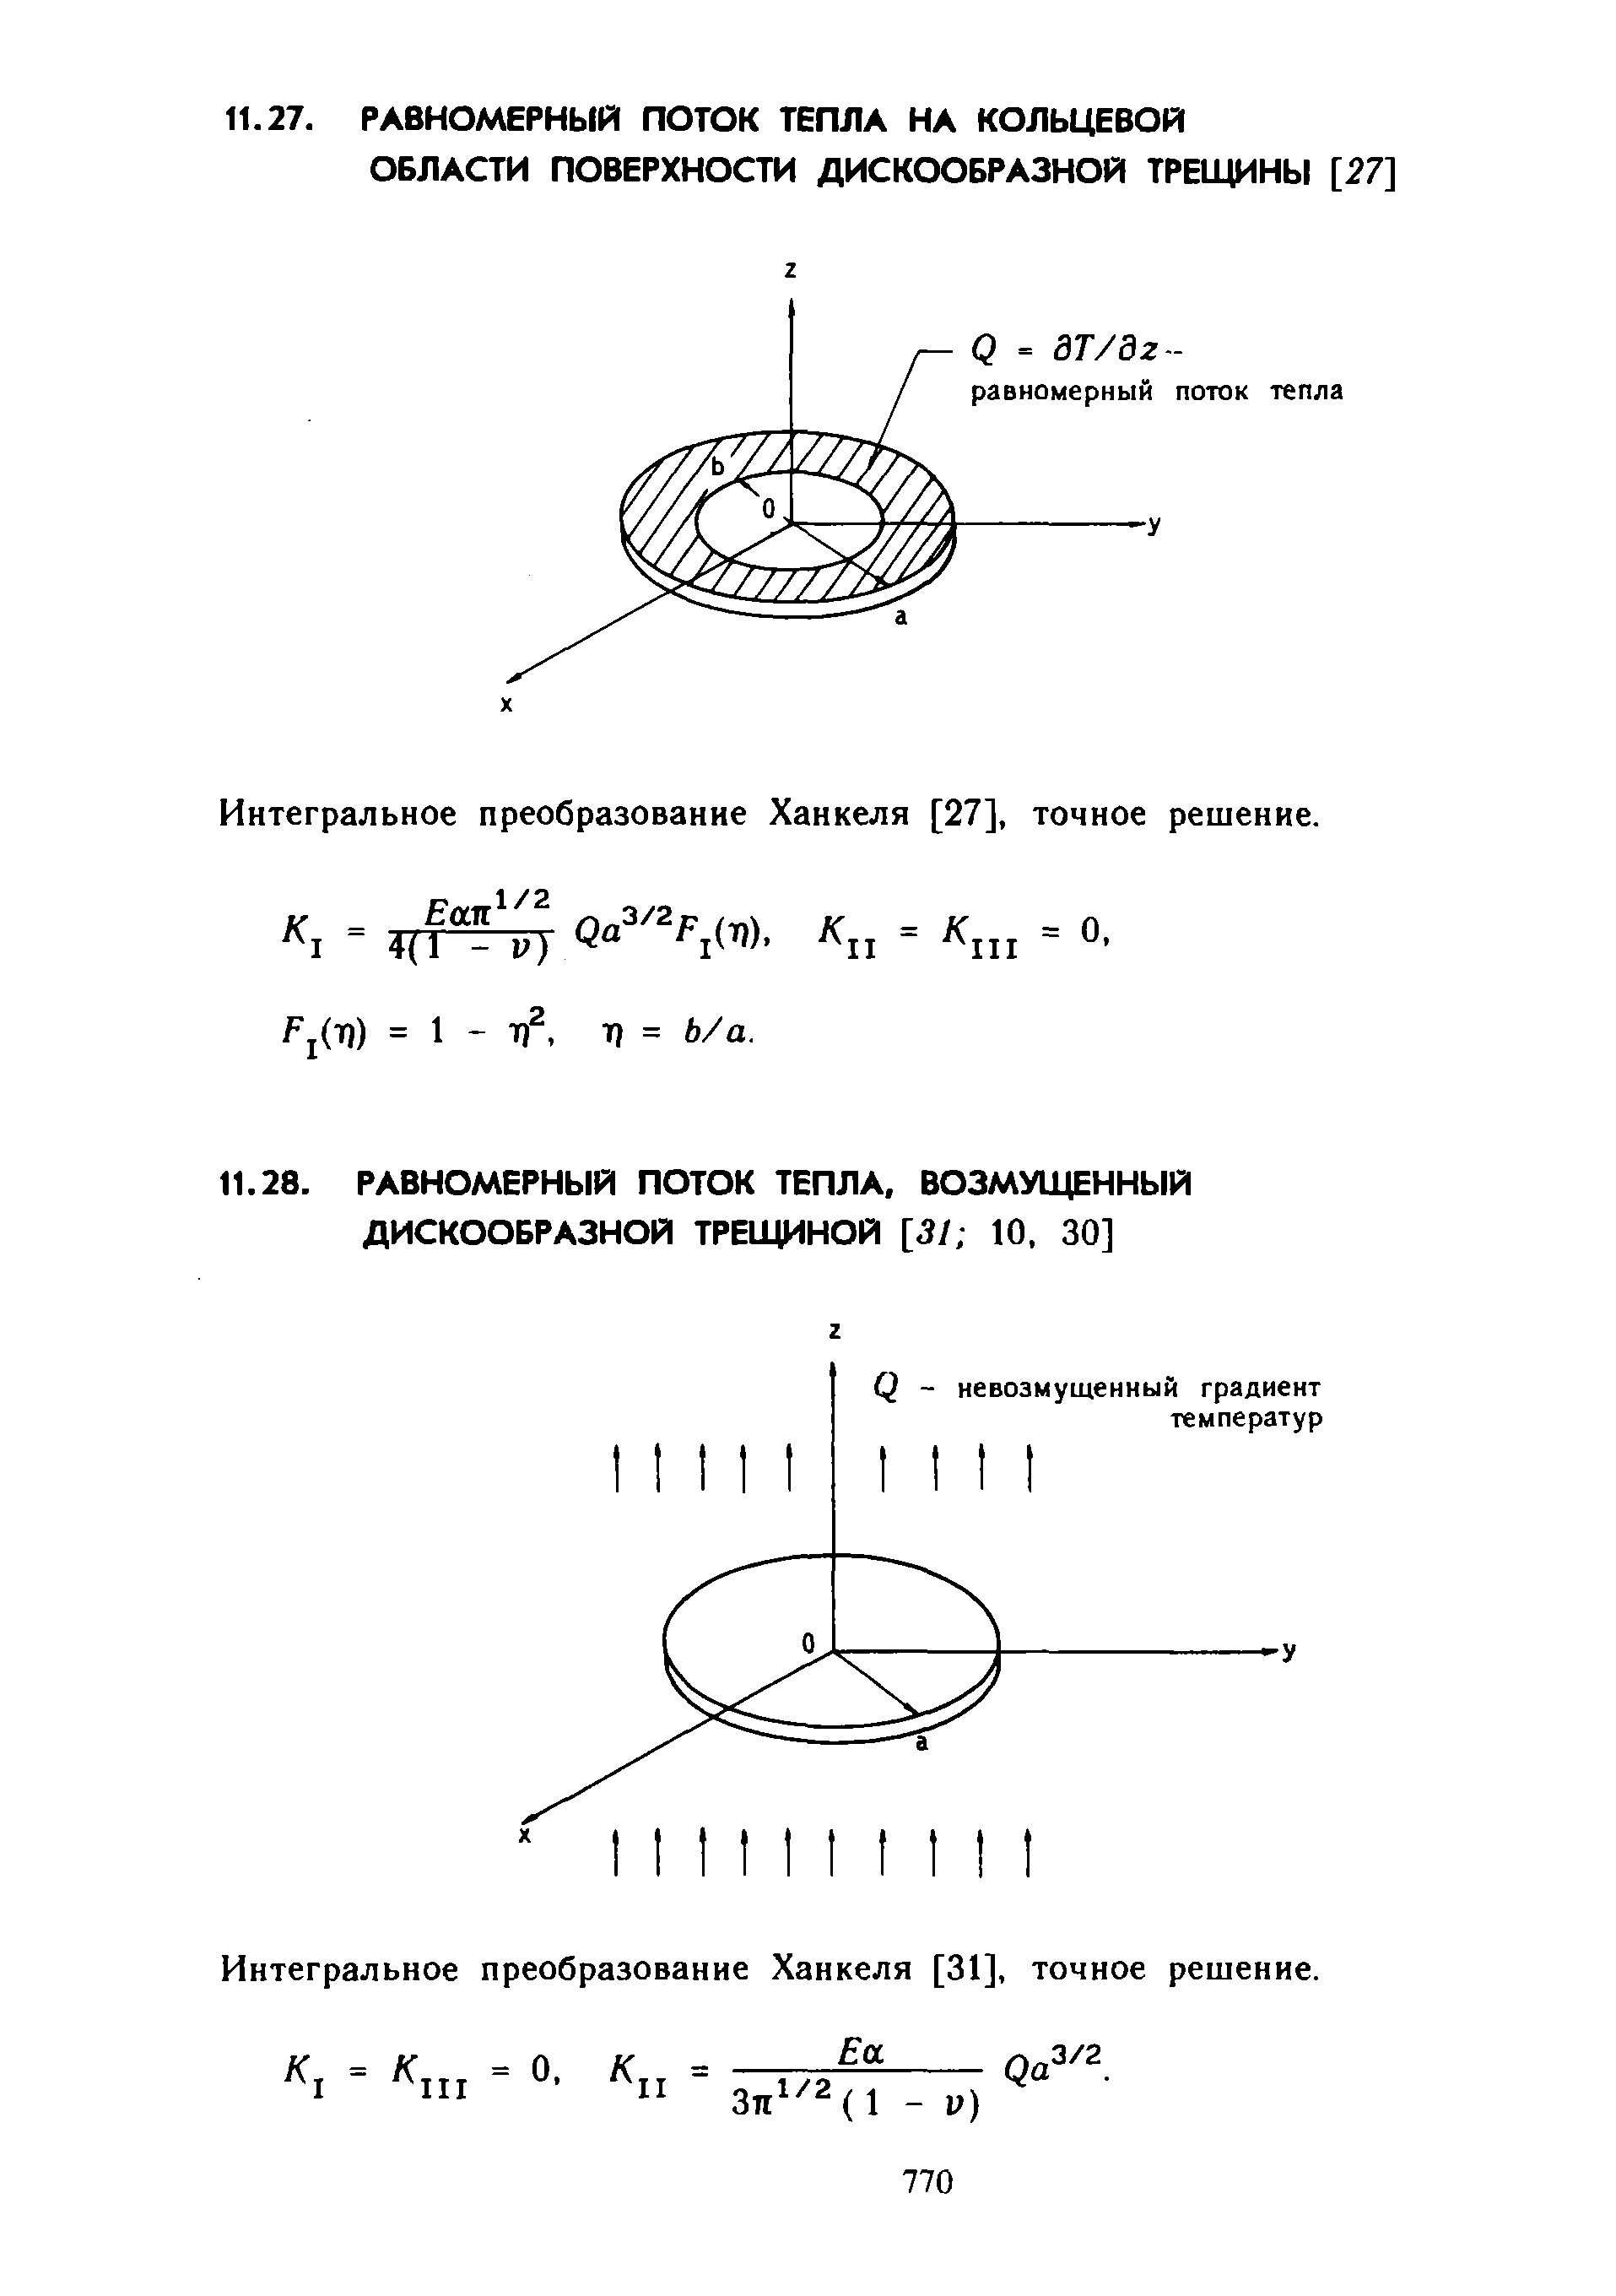 Интегральное преобразование Ханкеля [31], точное решение.
